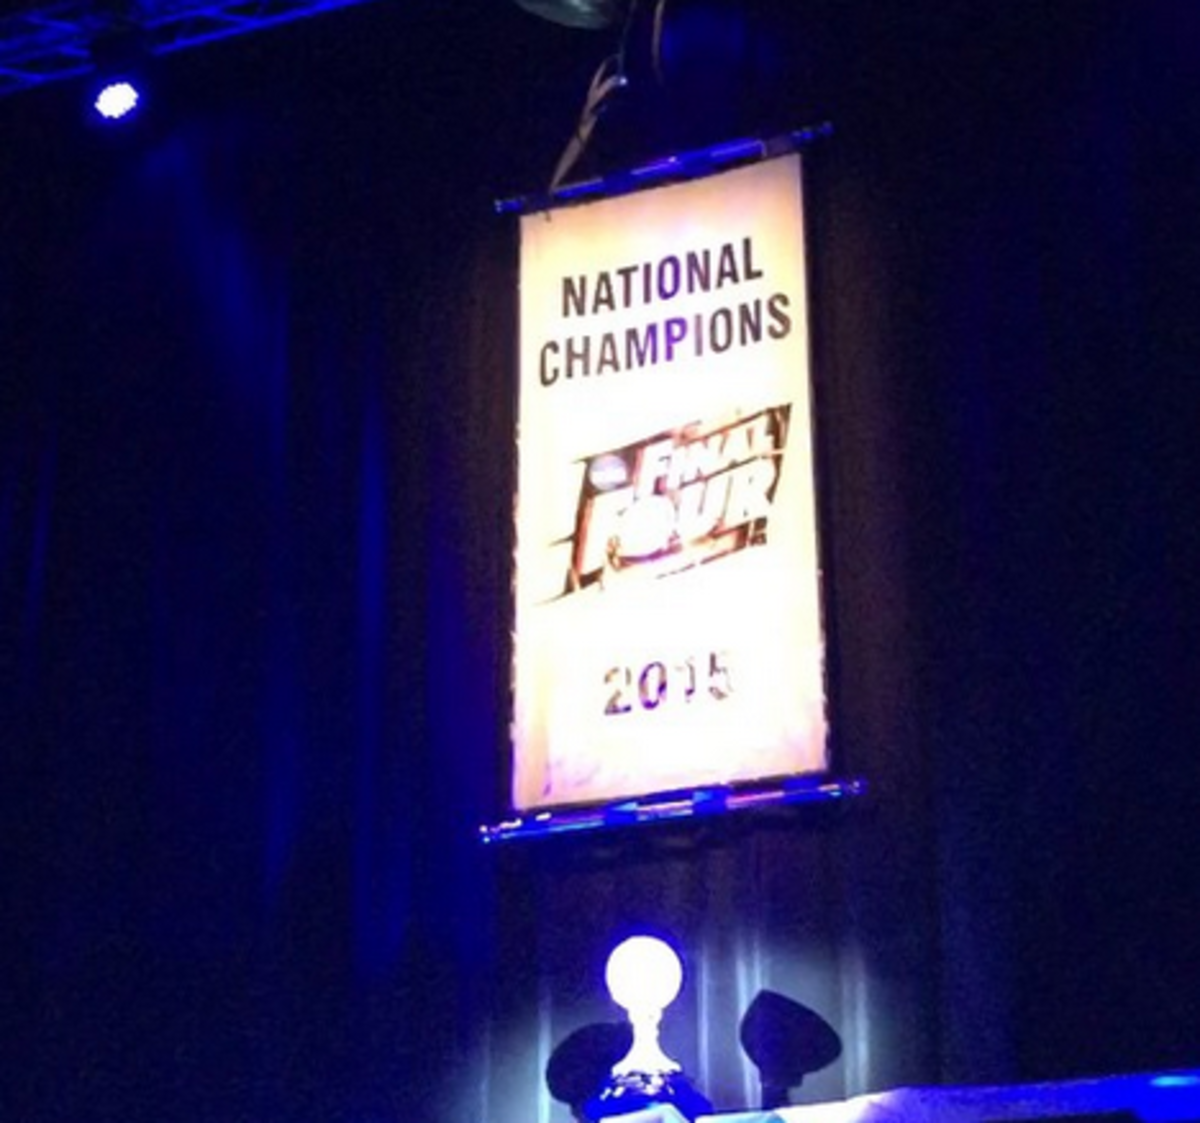 Duke basketball's 2015 national championship banner.